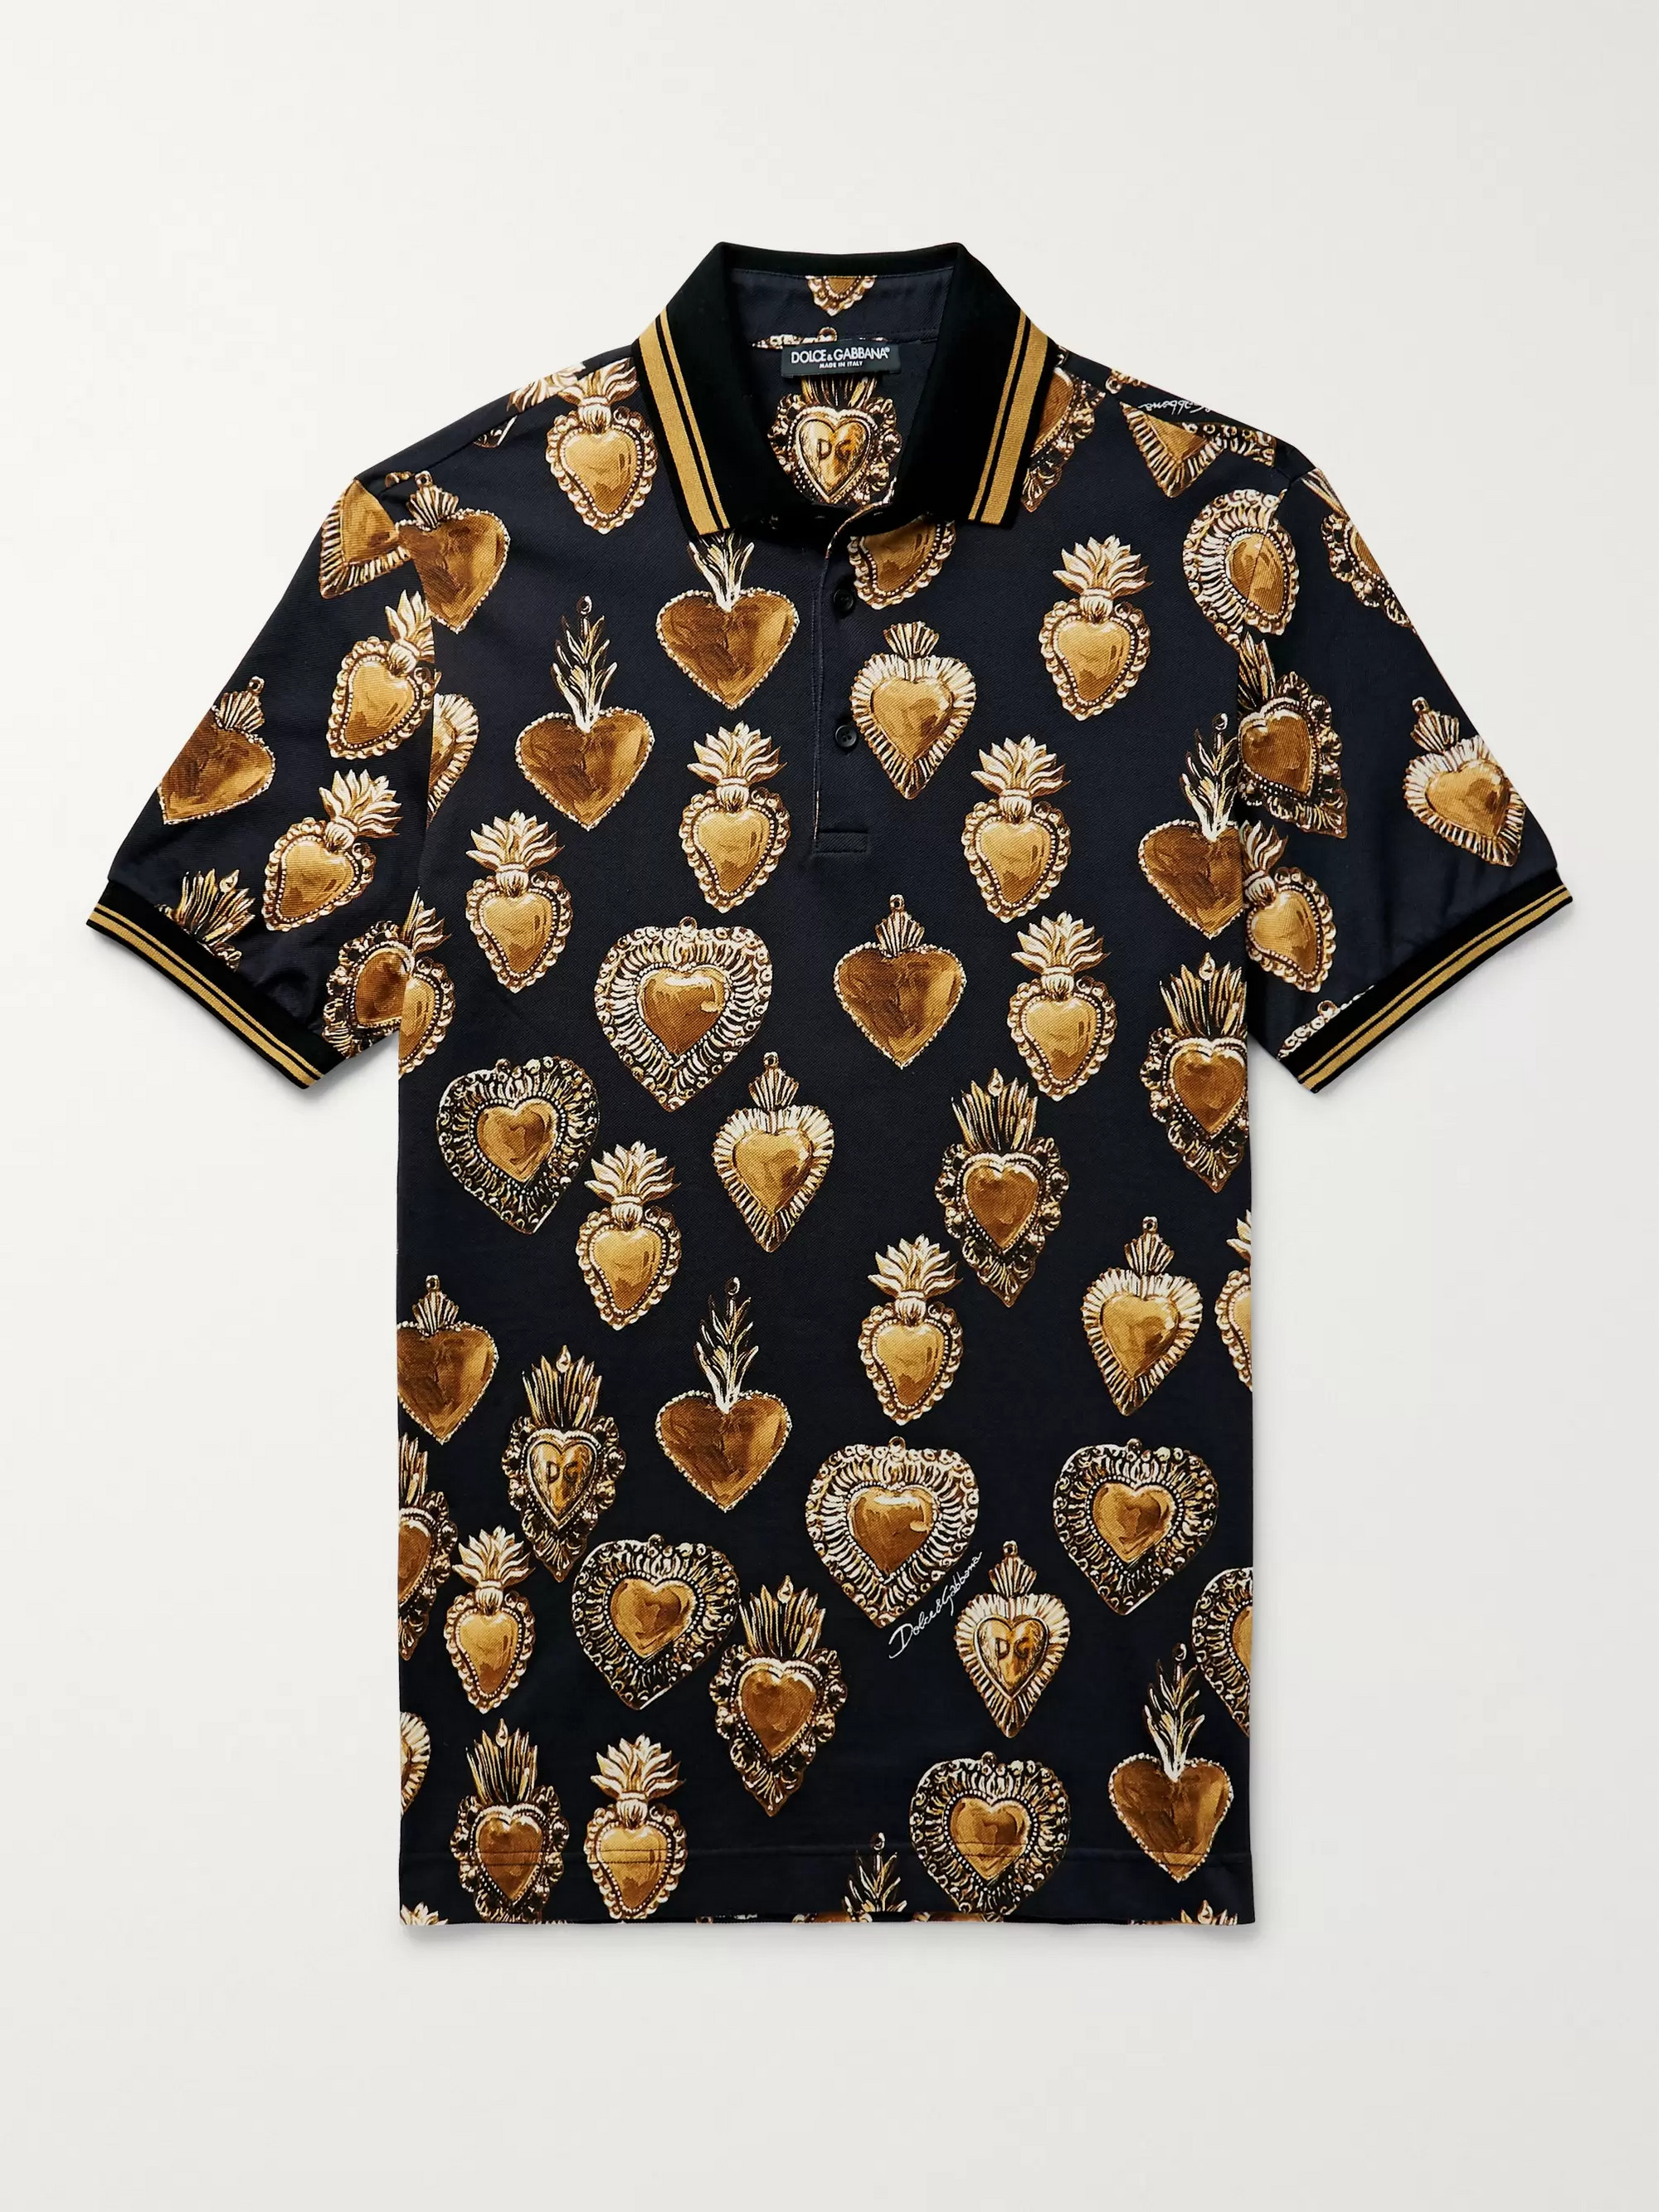 Рубашка дольче габбана. Принт Дольче Габбана. Dolce Gabbana Shirt. Dolce & Gabbana.Printed Shirt. Дольче Габбана принт 2019.